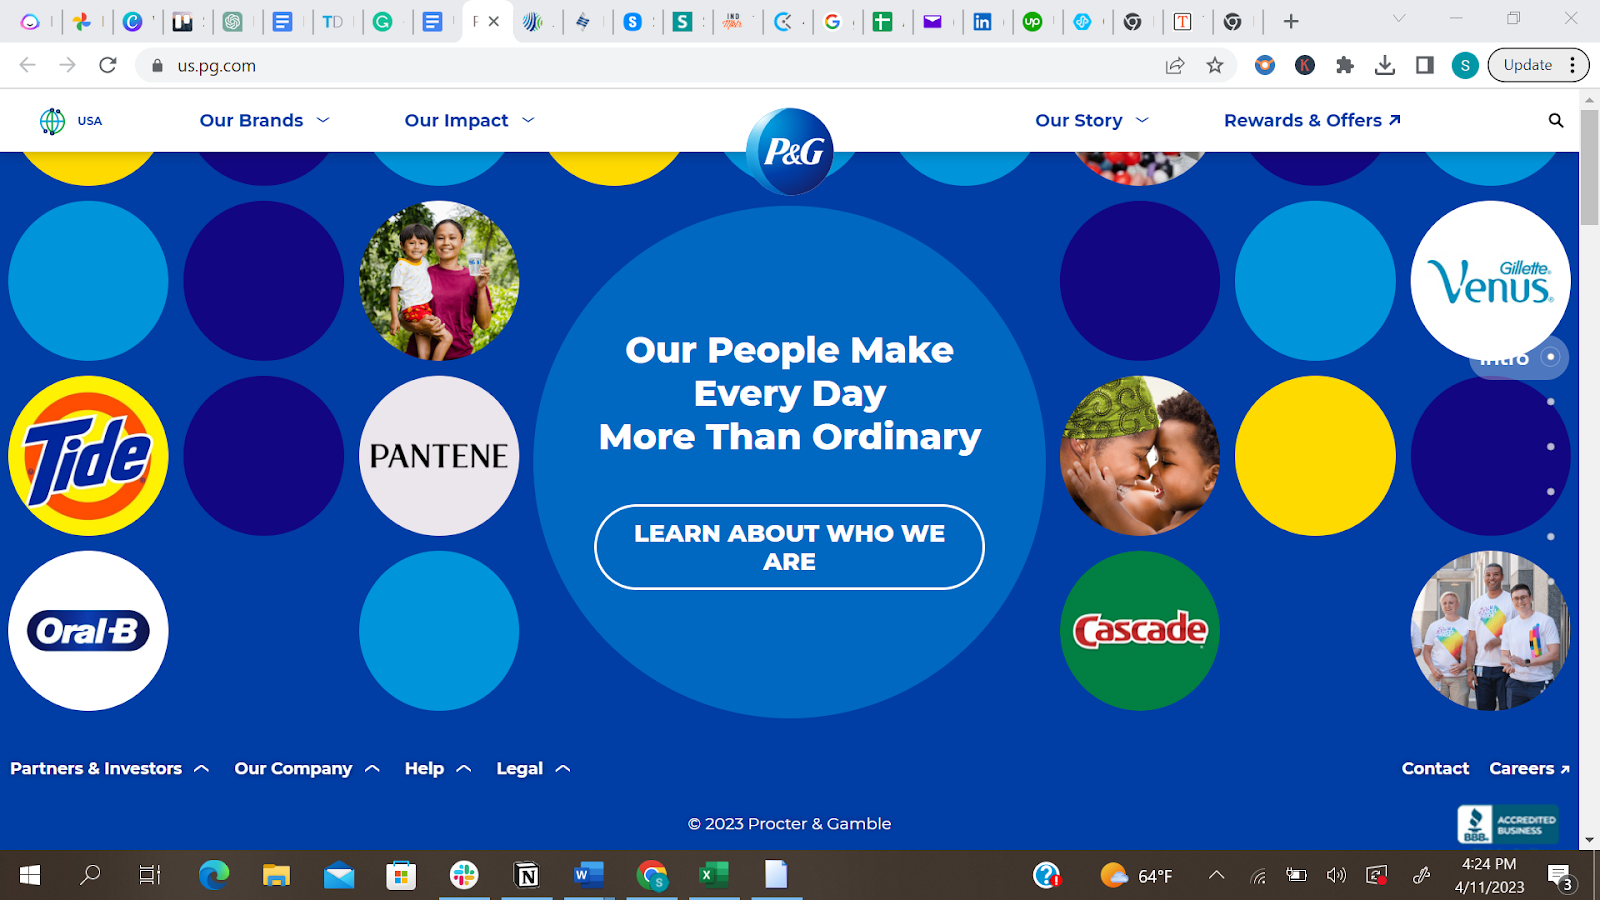 A representation of Procter & Gamble's website design